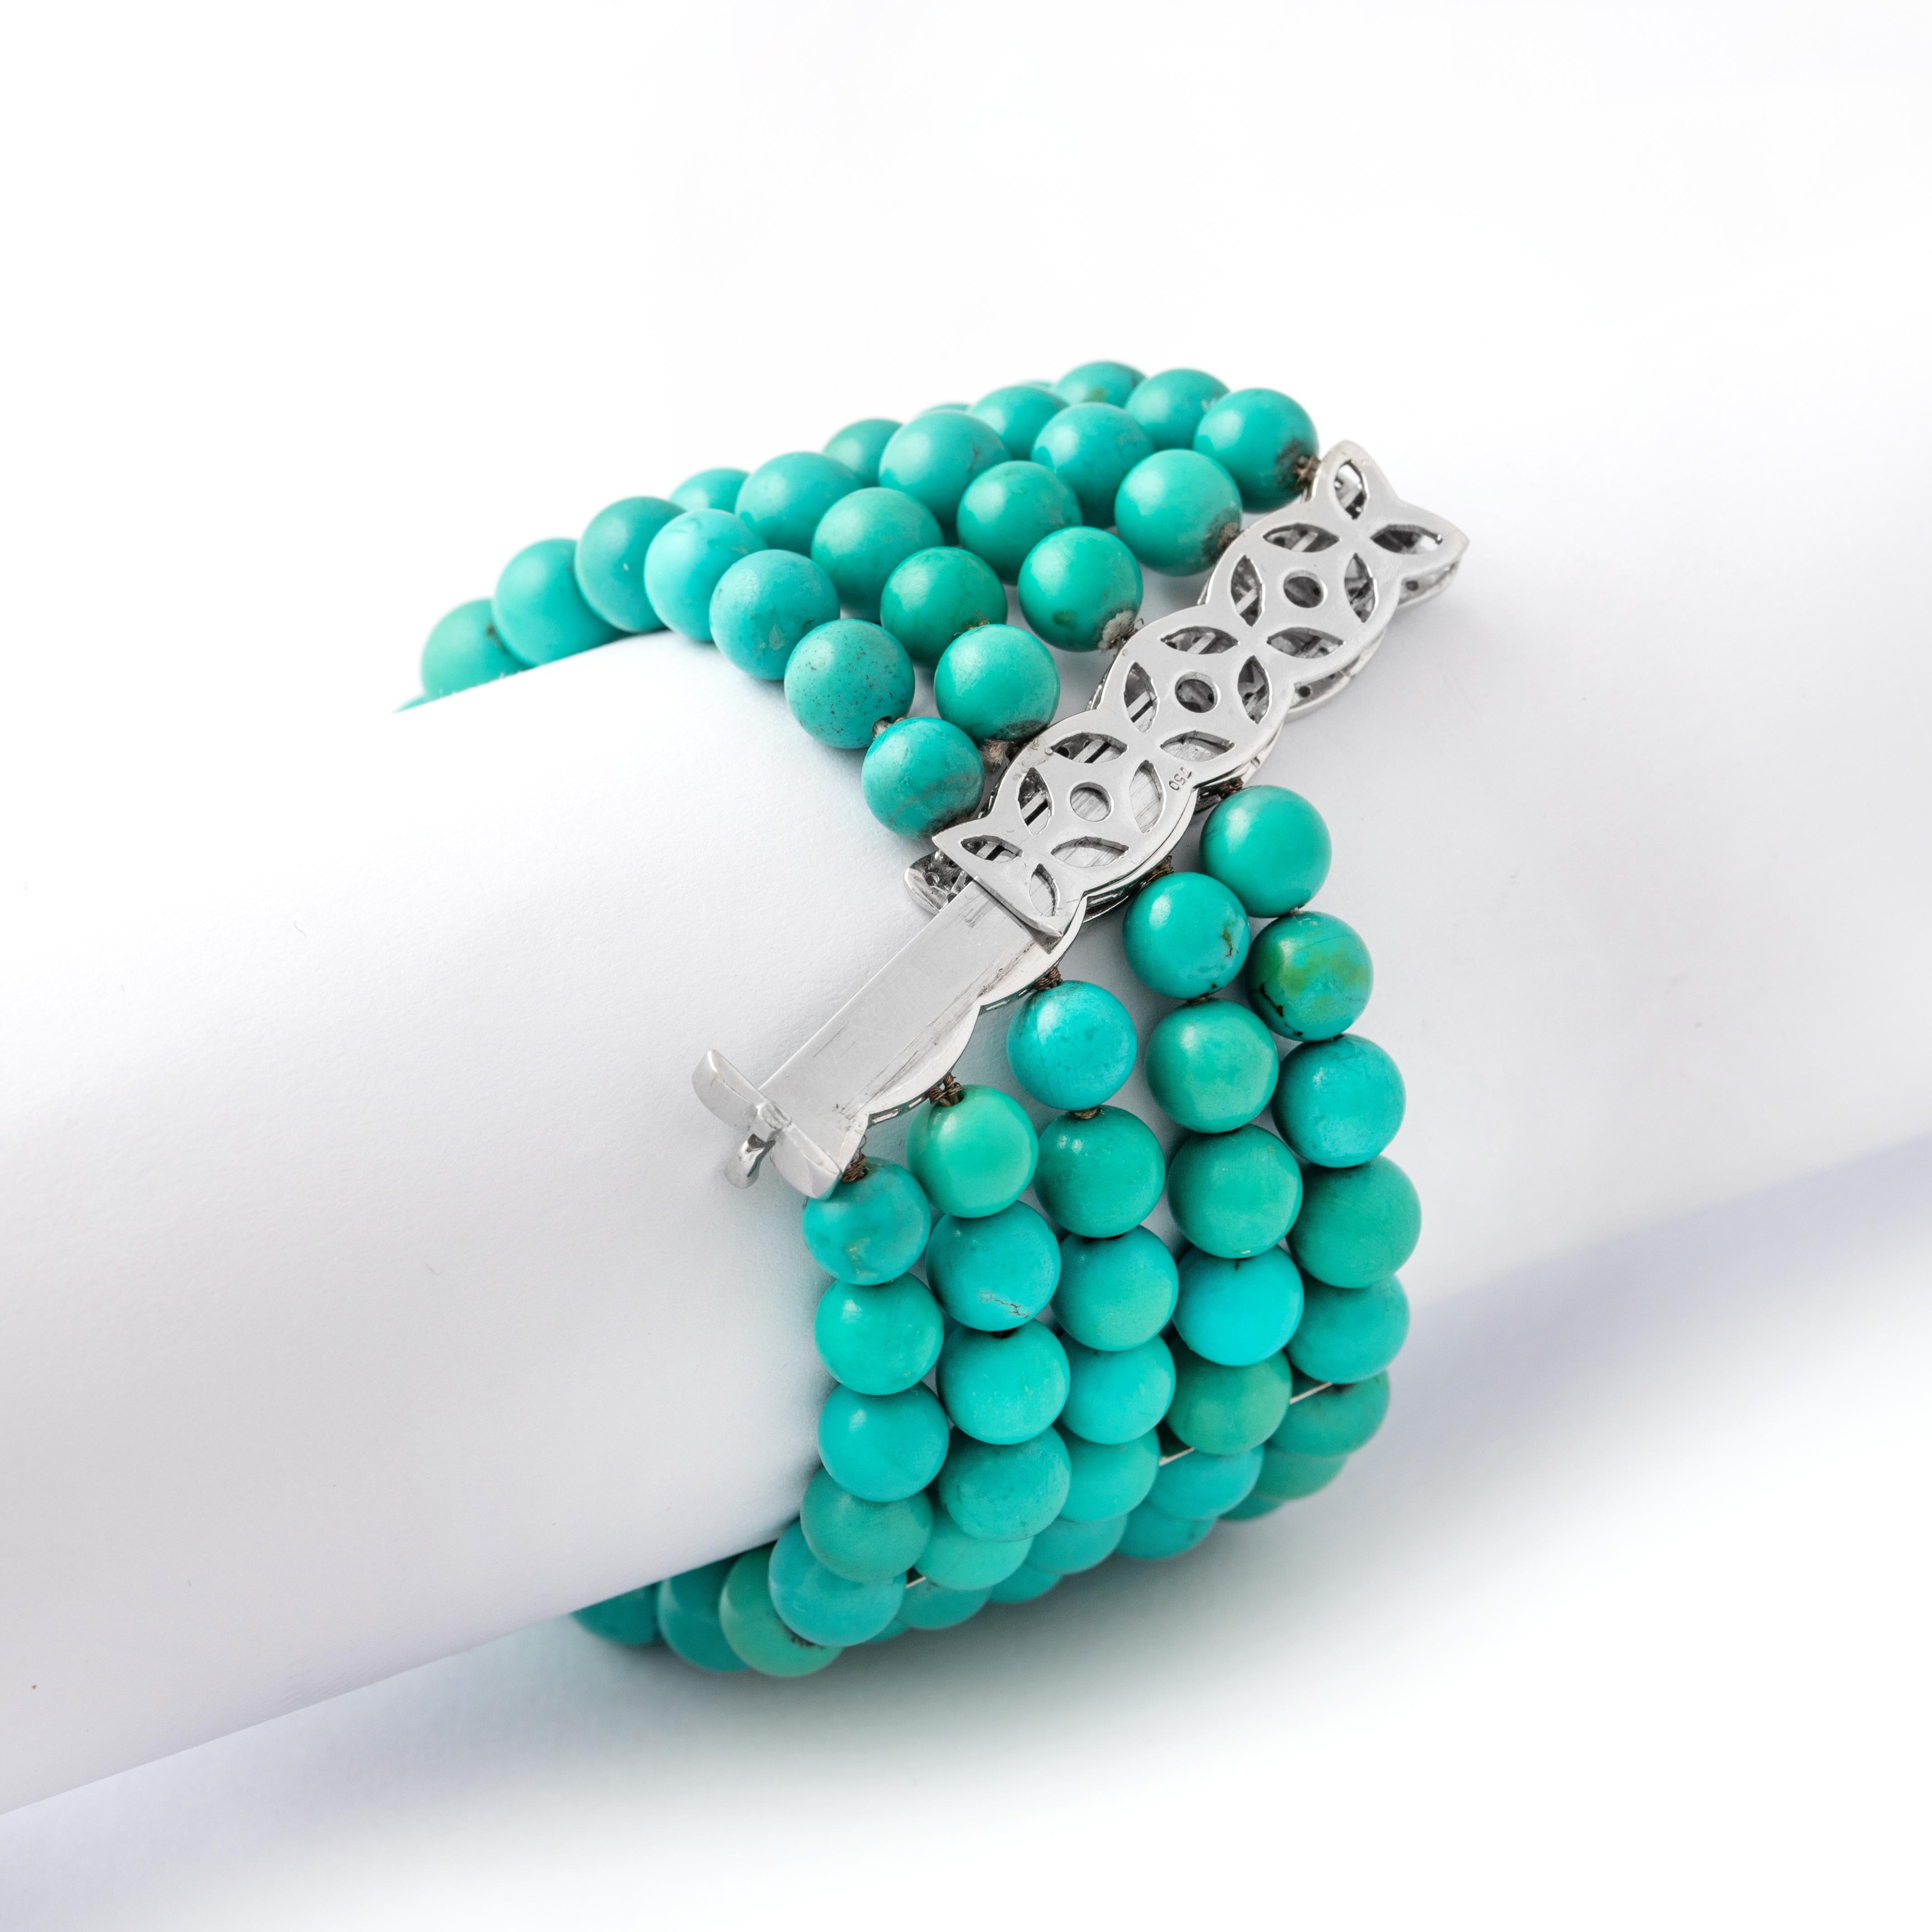 Bracelet en turquoise naturelle.
Rehaussez votre style avec notre bracelet en turquoise naturelle. Confectionné avec de véritables pierres de turquoise, il dégage une énergie apaisante et une élégance intemporelle. Qu'elle soit portée seule ou